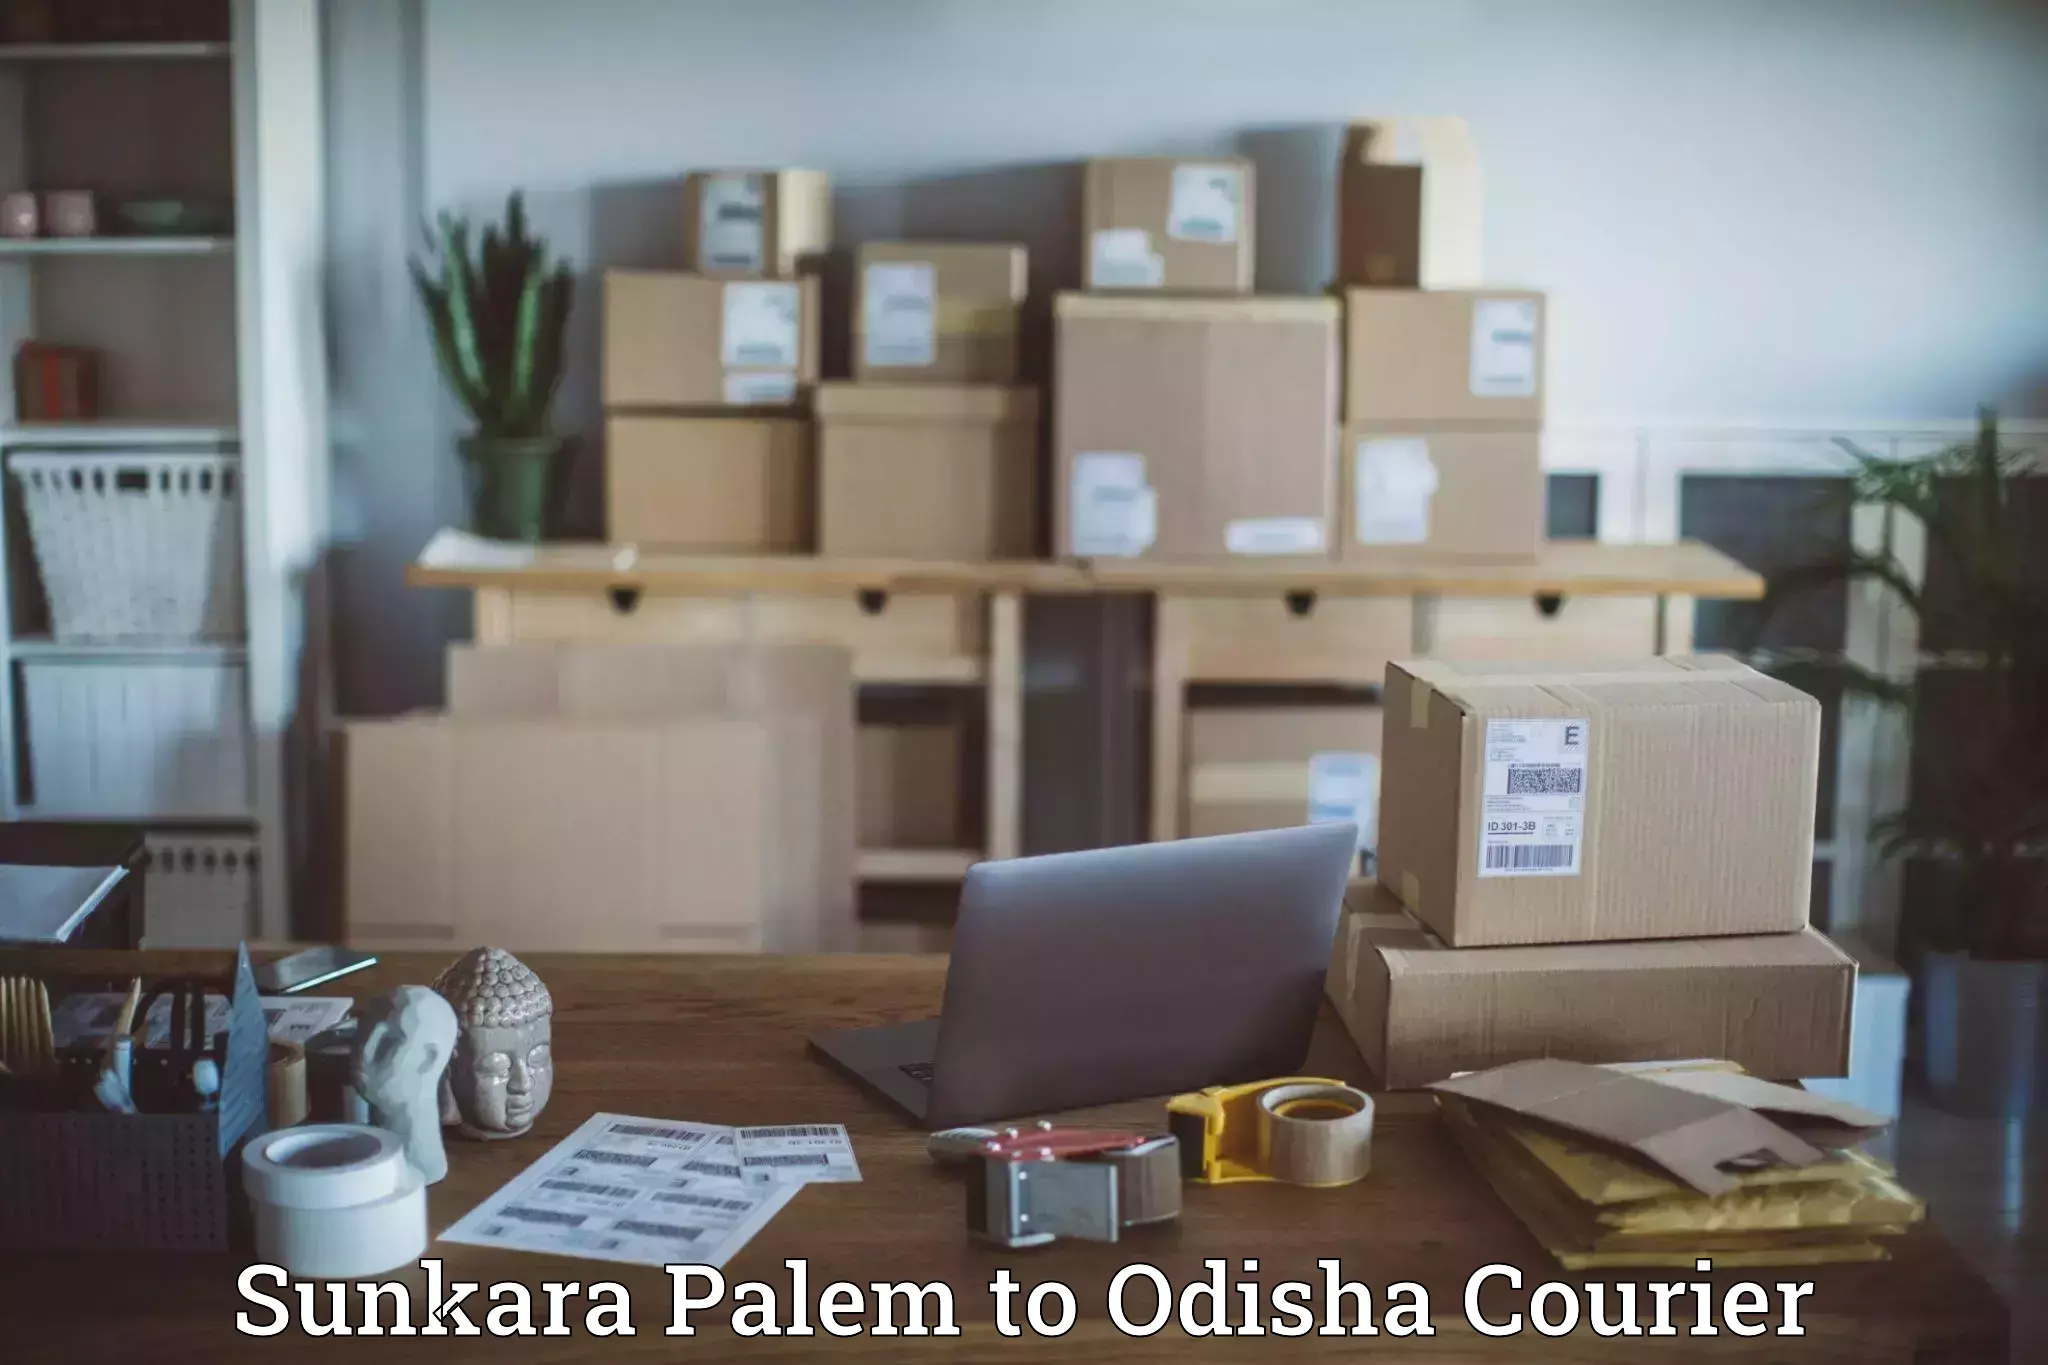 High-capacity parcel service Sunkara Palem to Junagarh Kalahandi